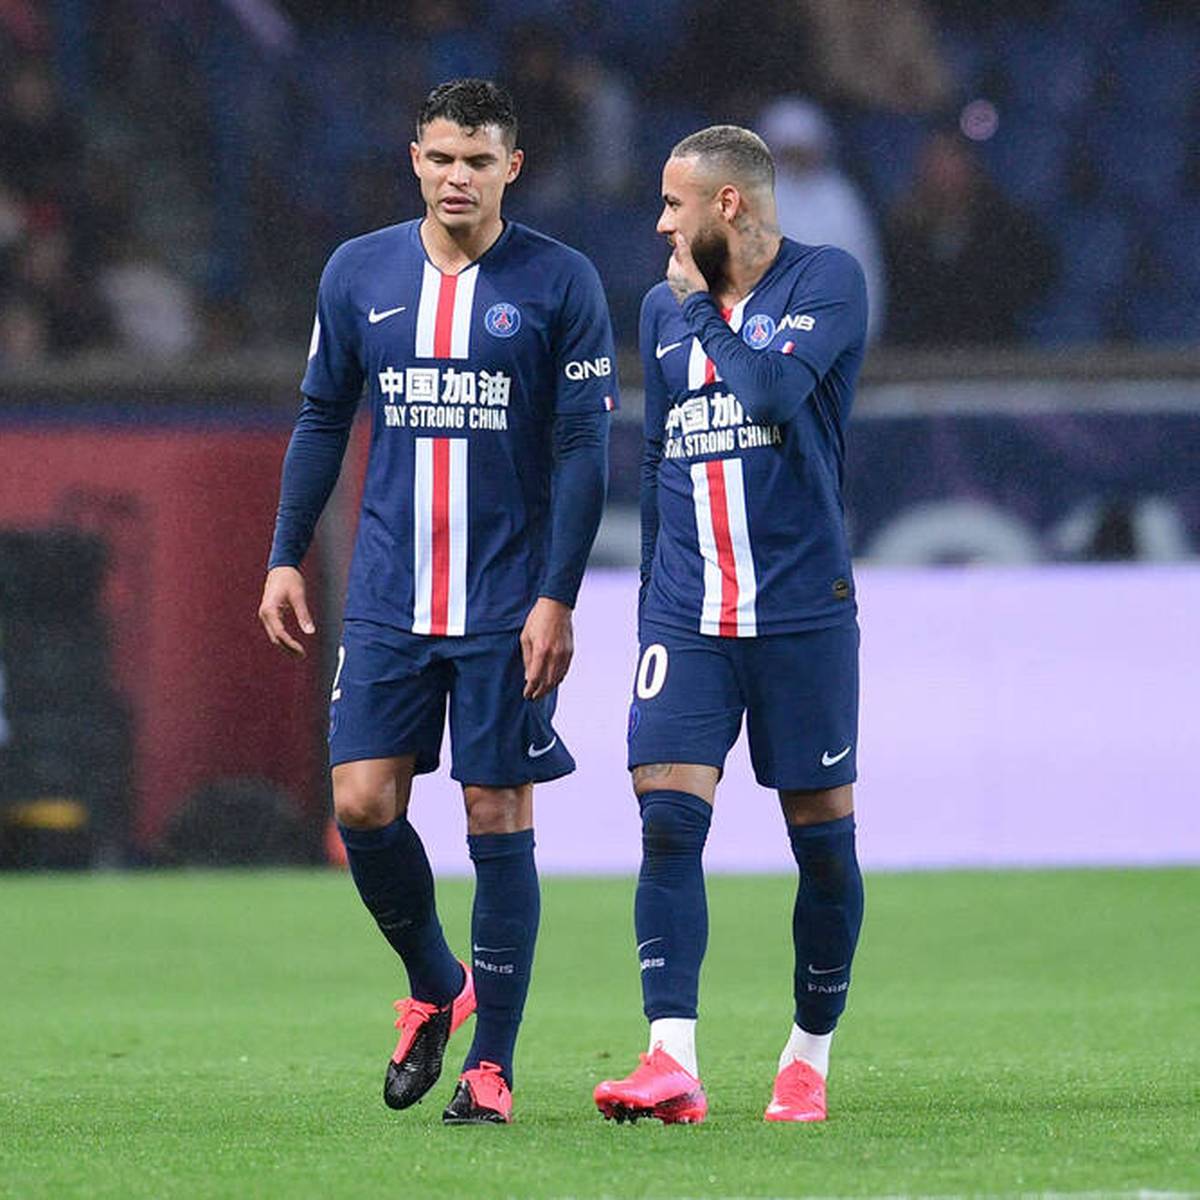 Die Tage von Neymar bei Paris Saint-Germain scheinen gezählt. Nun schaltet sich sein Landsmann Thiago Silva in die Wechseldebatte ein und gibt dem 30-Jährigen einen Ratschlag.